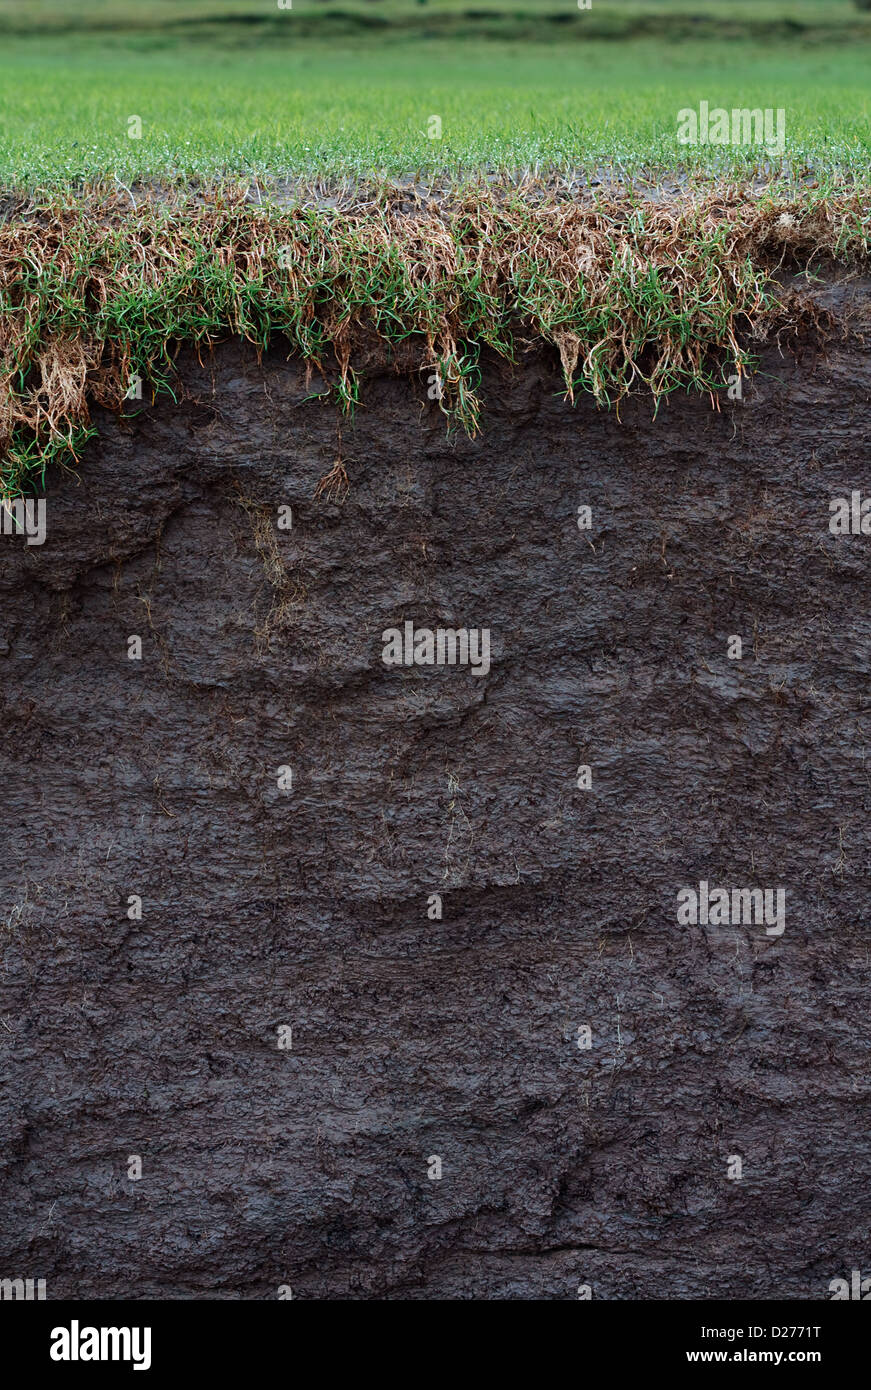 La section transversale d'un marais champ avec le sol exposé à la suite de l'érosion côtière ou un glissement de terrain Banque D'Images